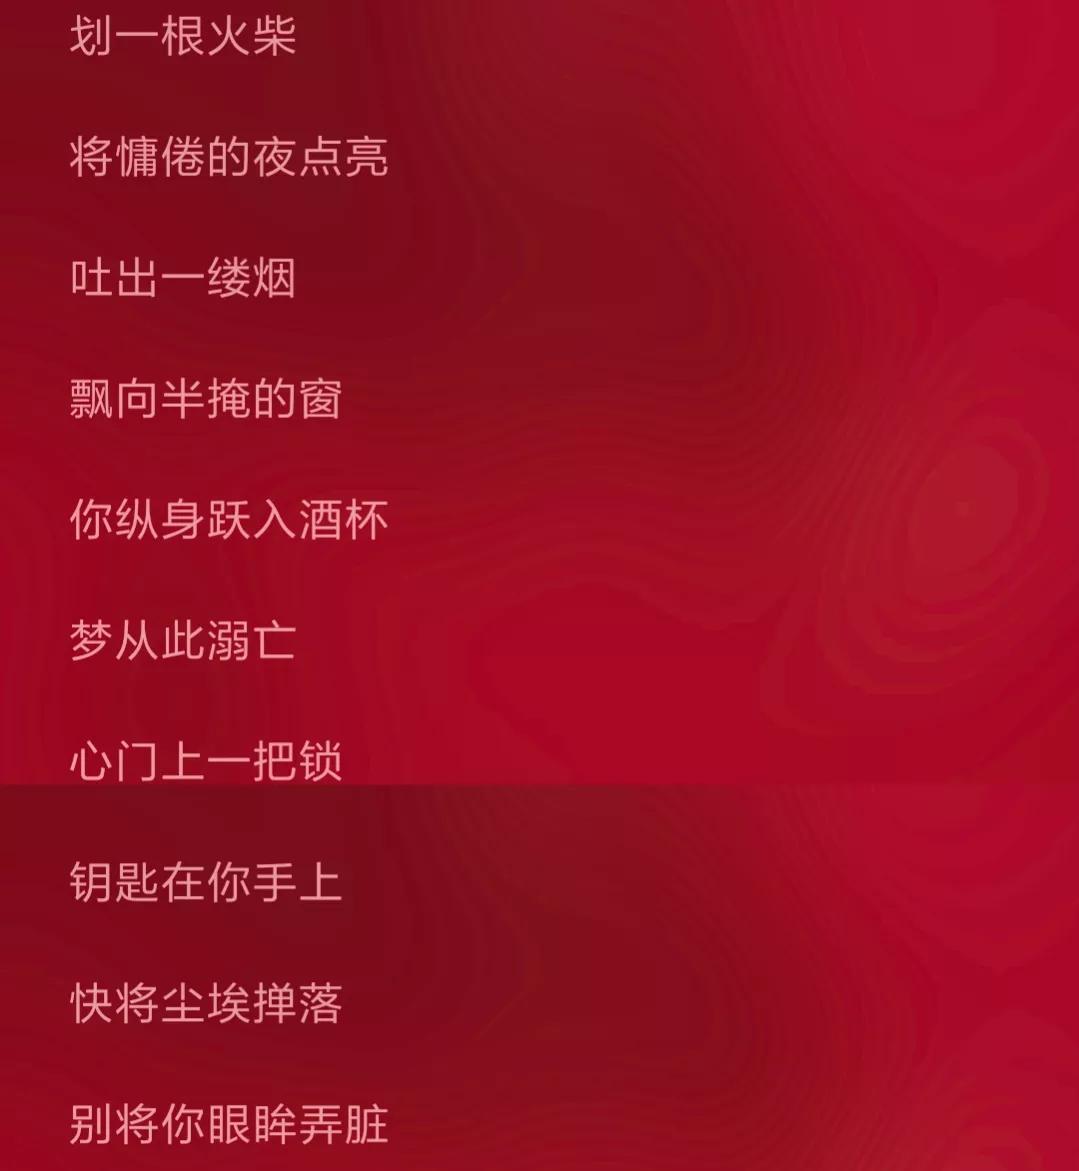 歌曲发行于2017年6月25日,是由张小九演的一首歌曲其歌词为